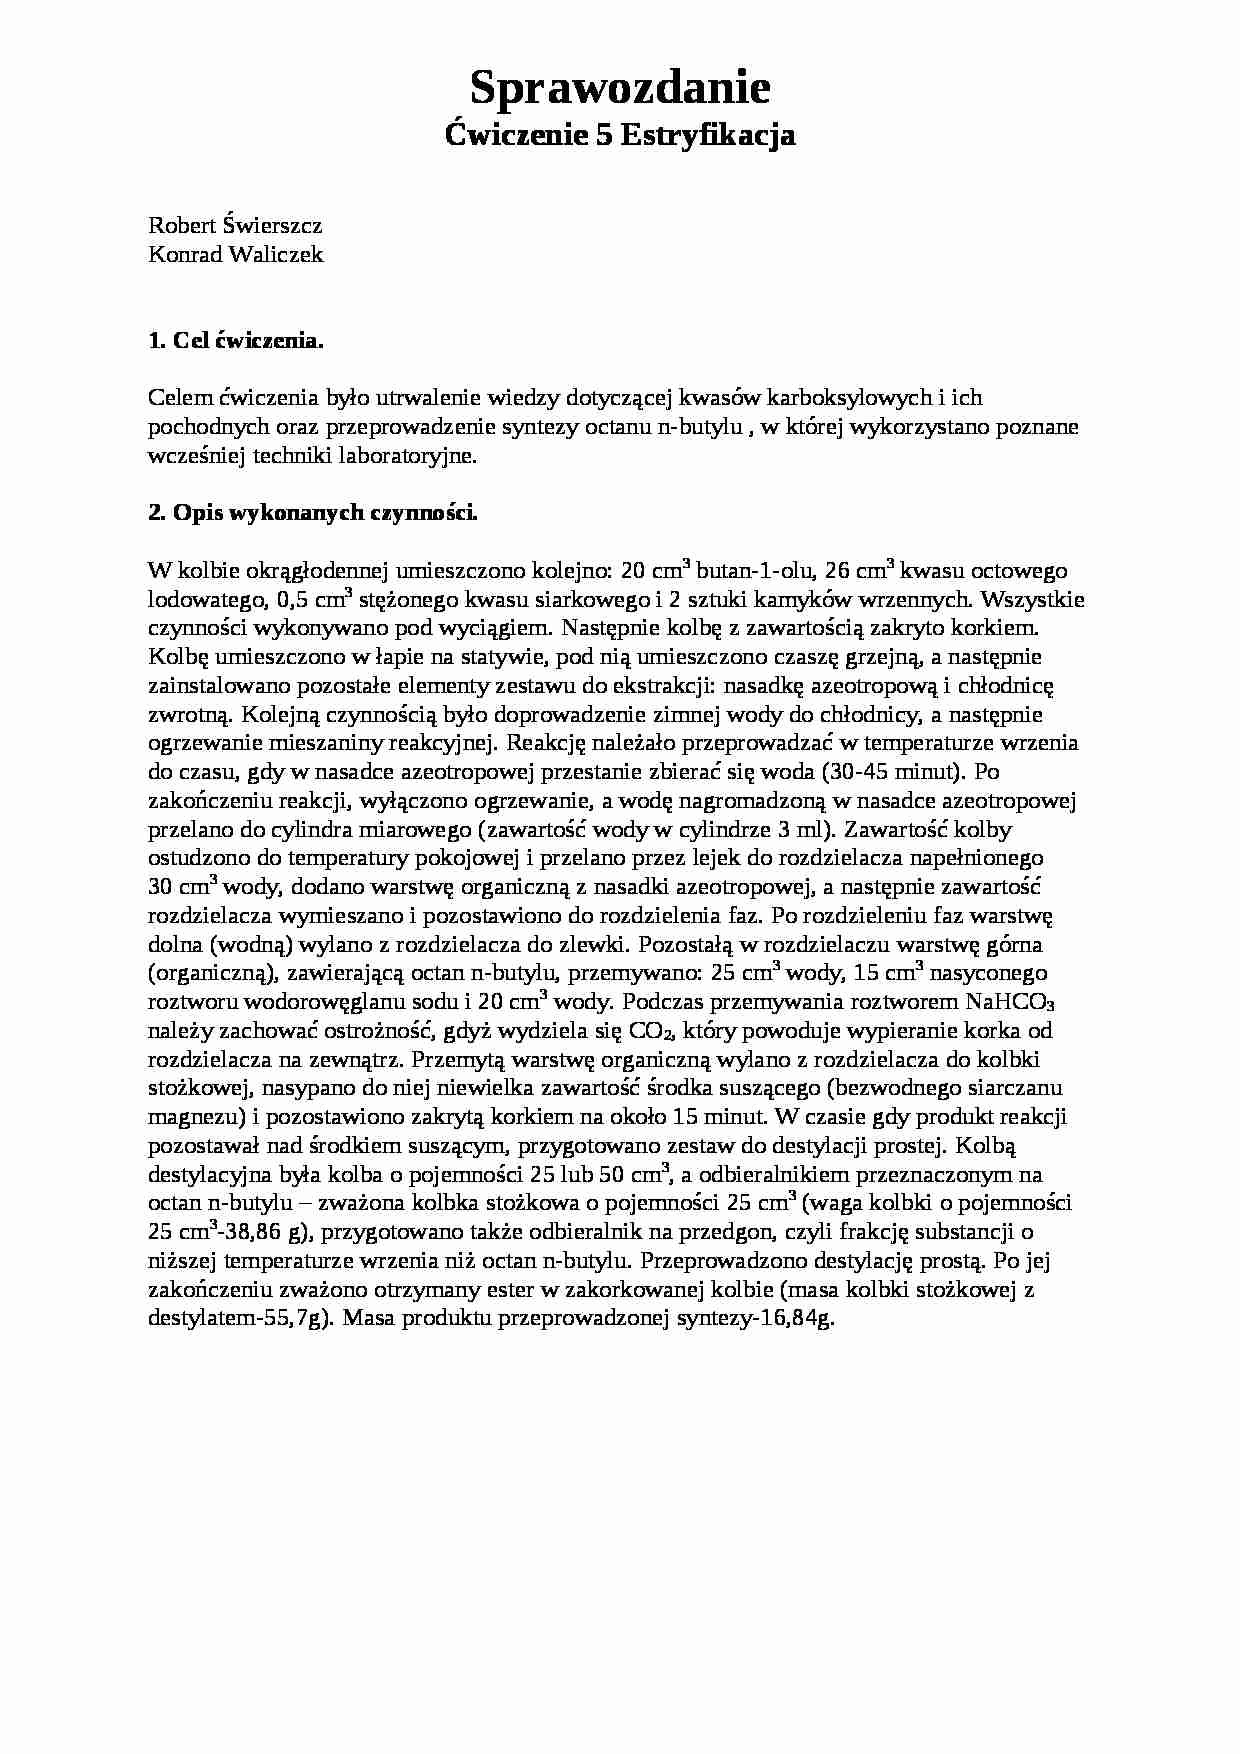 Chemia organiczna - estryfikacja - omówienie - kwasy karboksylowye - strona 1